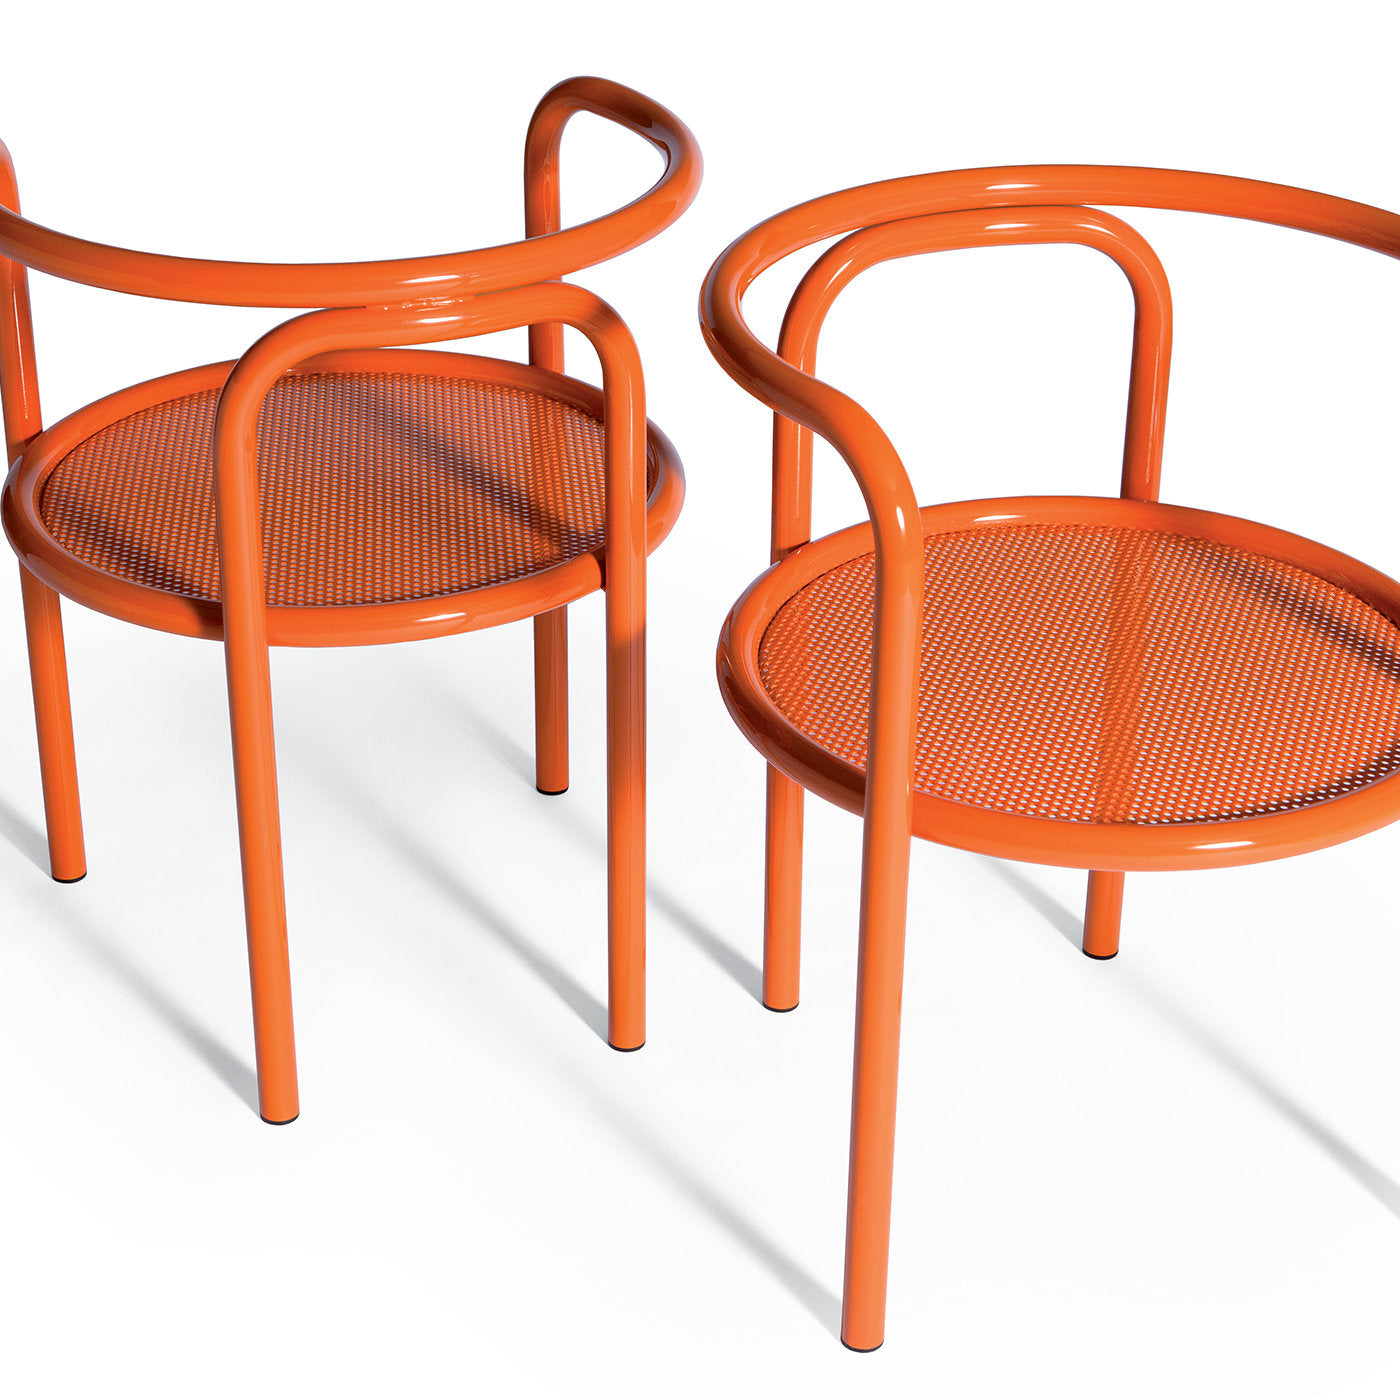 Locus Solus Orange Chair by Gae Aulenti - Vue alternative 1